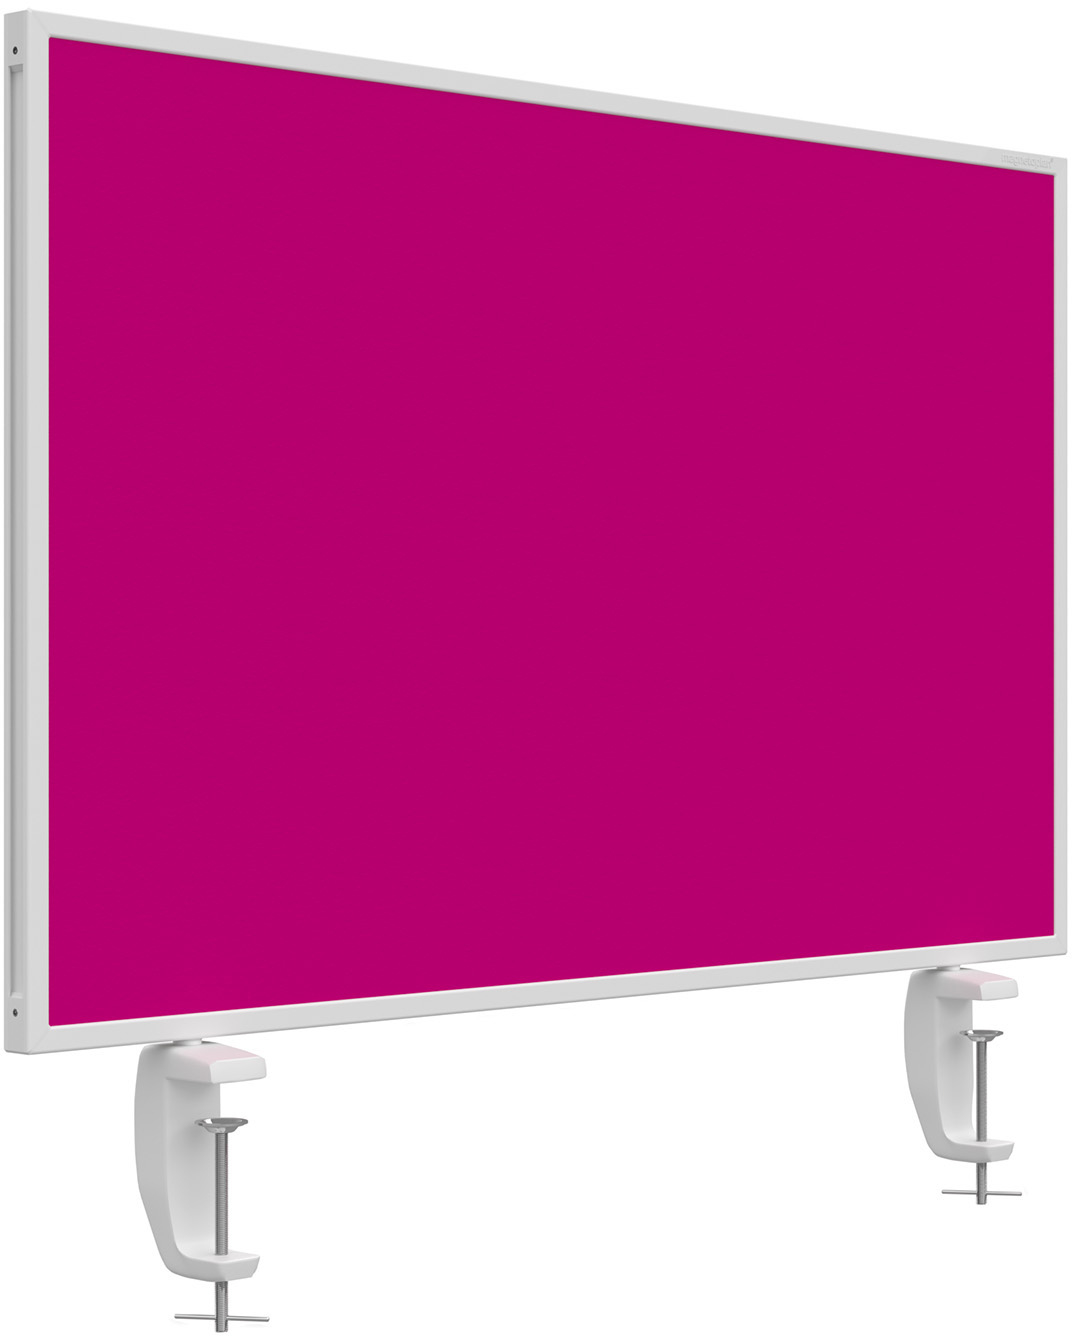 MAGNETOPLAN Tischtrennwand VarioPin 1108018 pink 800x500mm